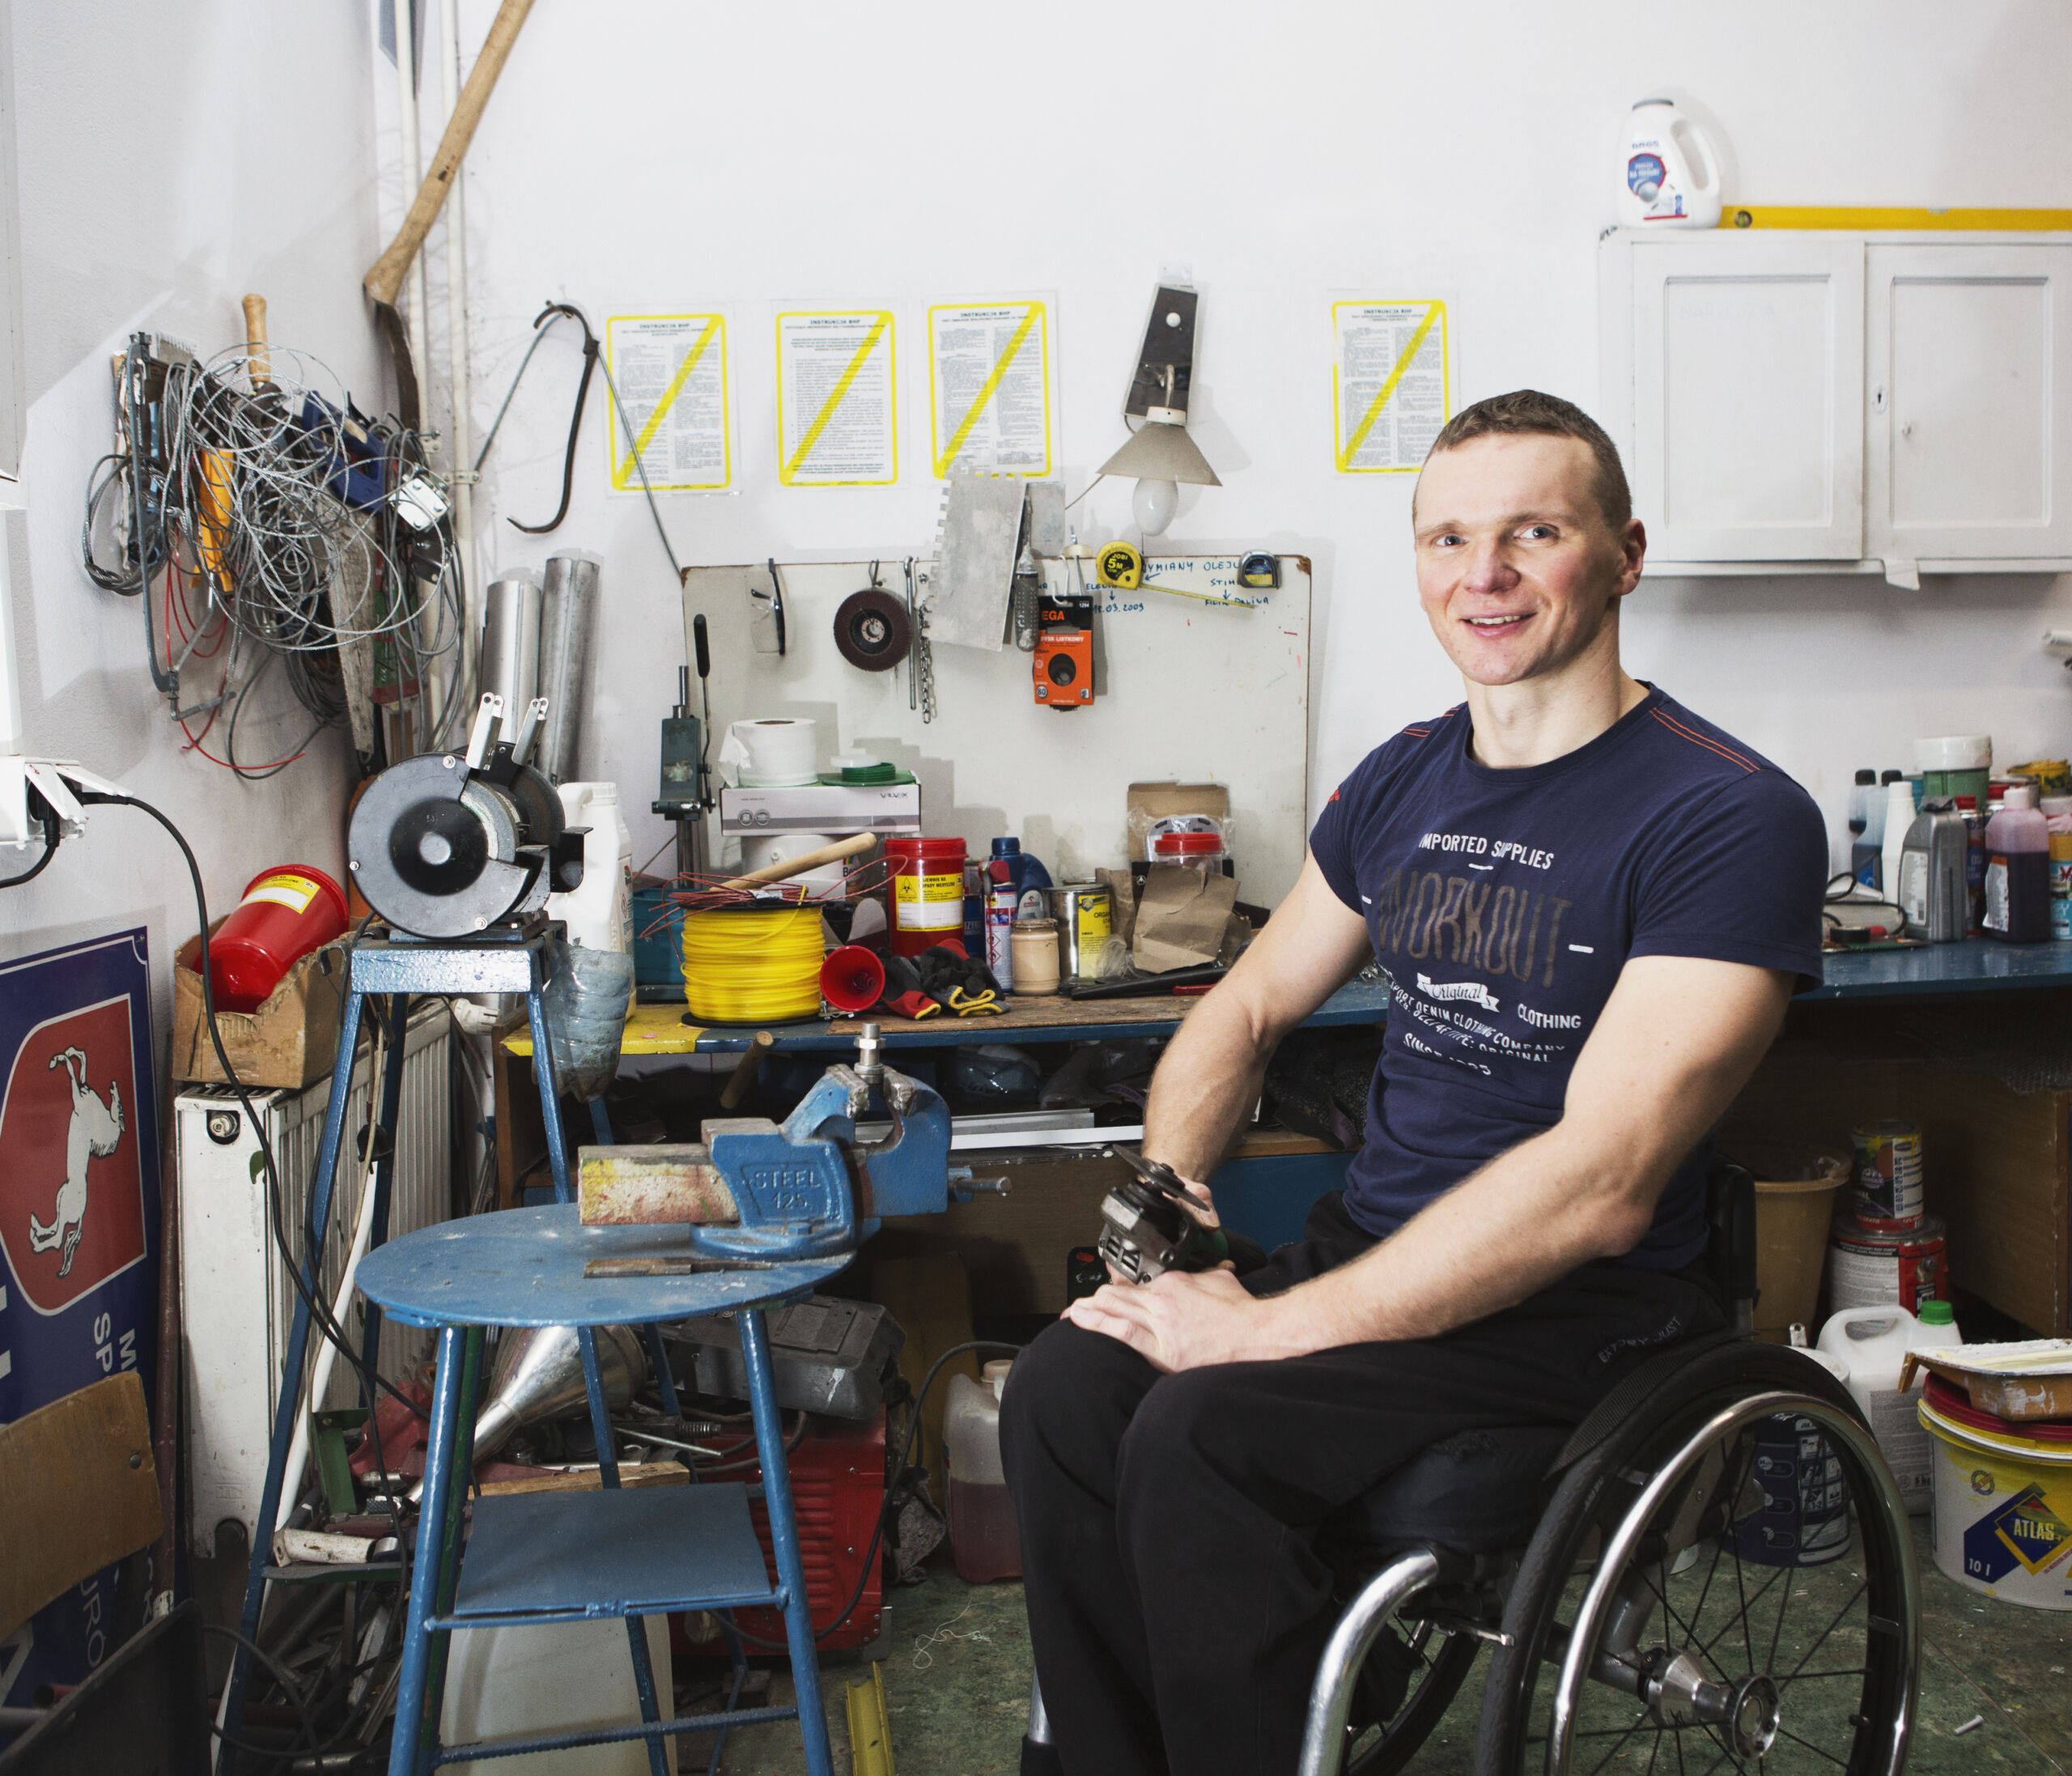 Mężczyzna siedzi na wózku inwalidzkim w warsztacie mechanicznym. W dłoni trzyma szlifierkę.